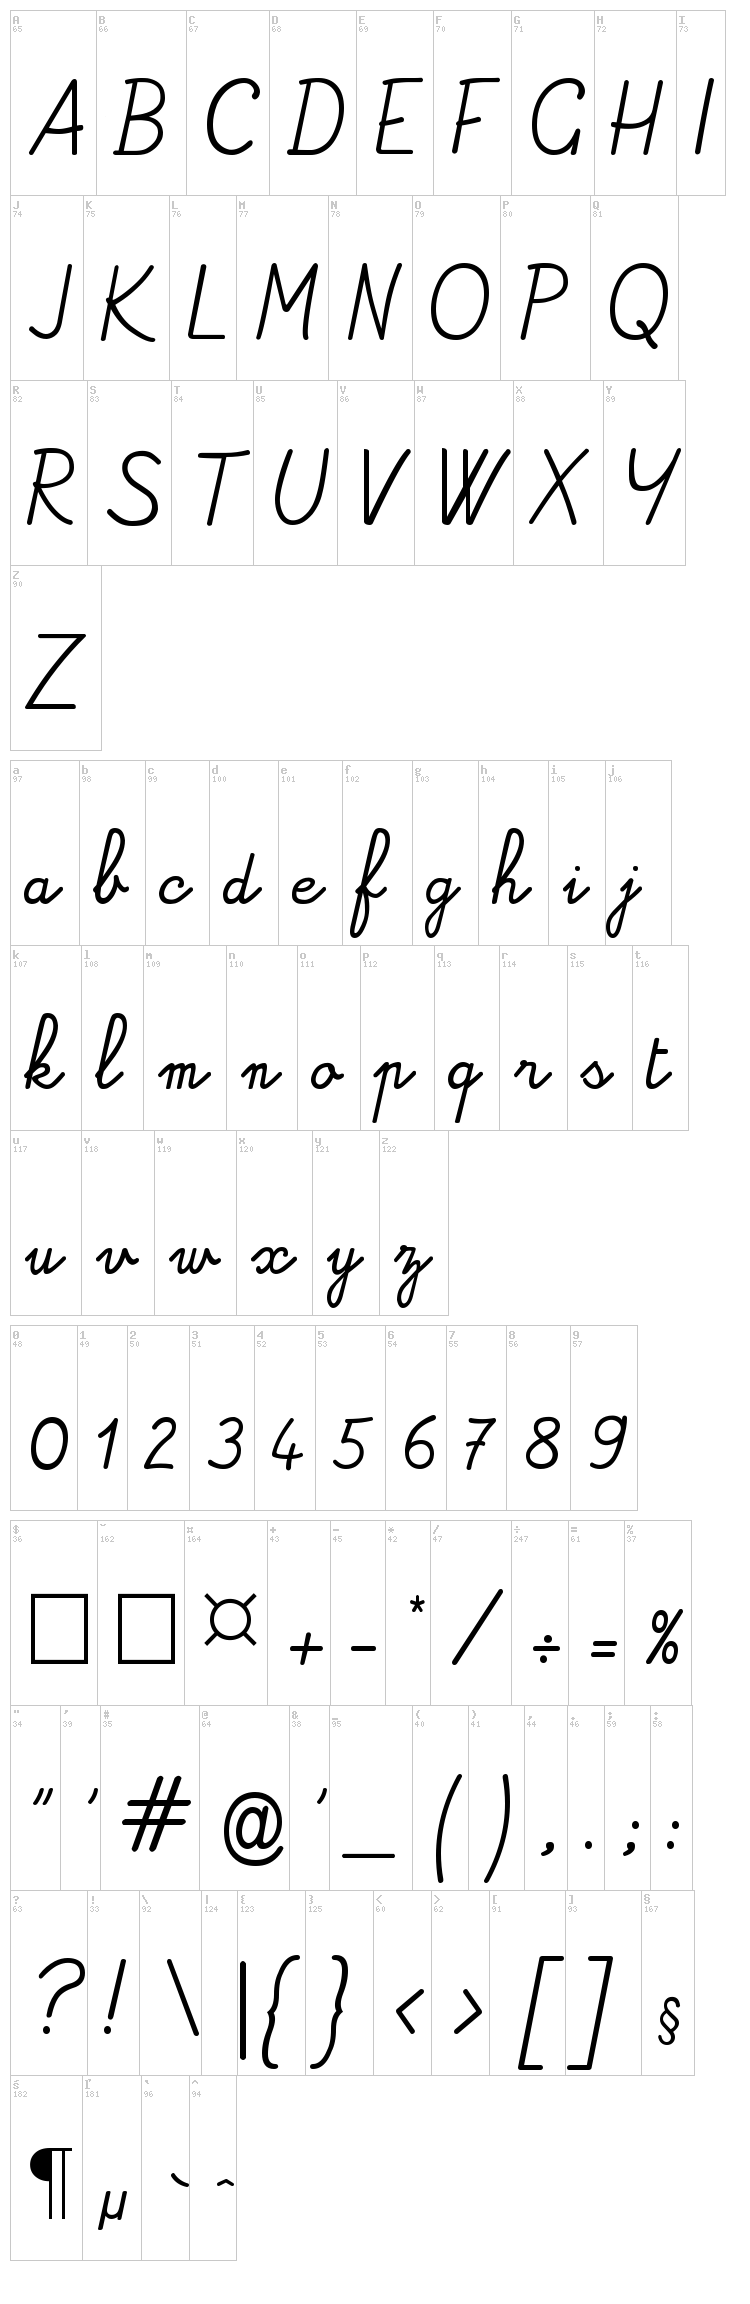 Alamain font , Script - School fonts - Fontzzz.com